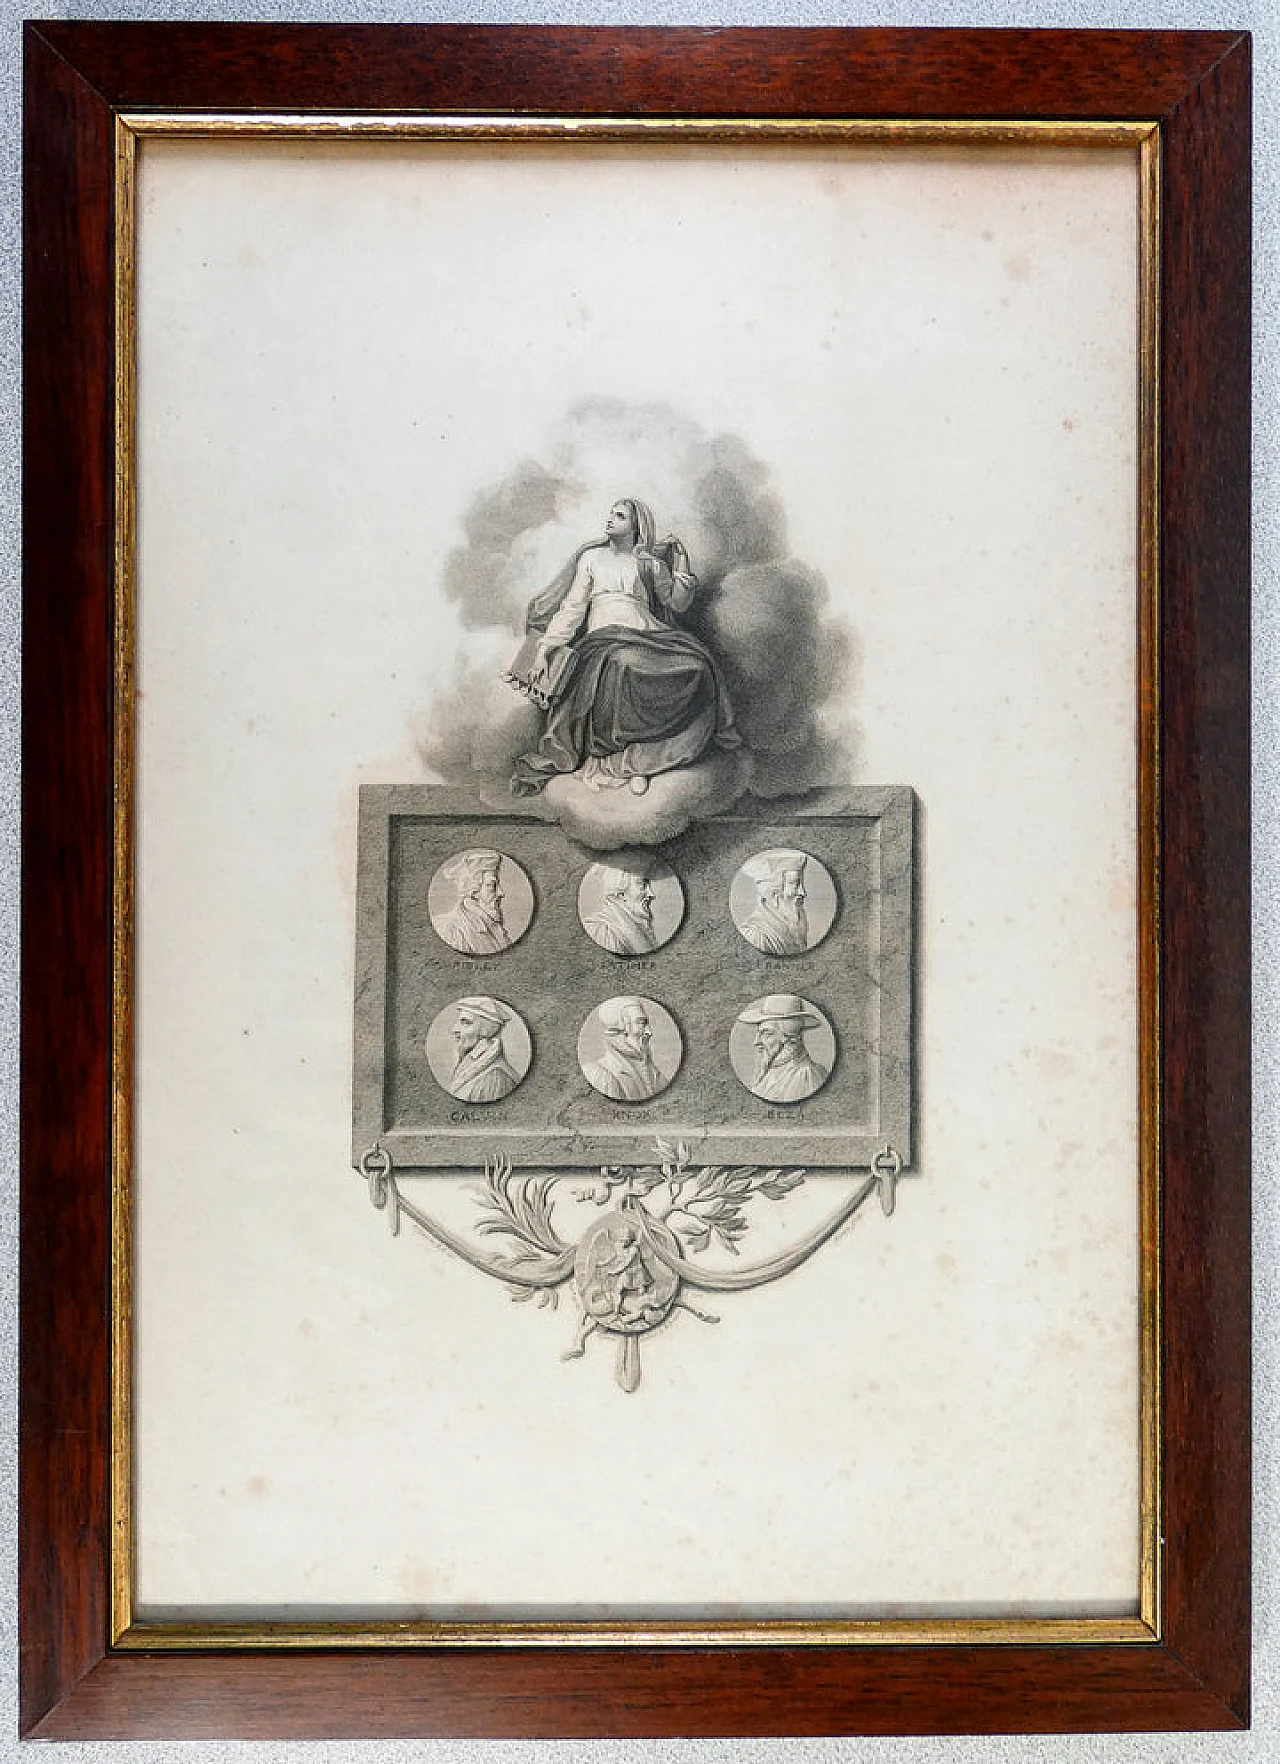 Robert Smirke, figure della Riforma Protestante, acquaforte, 1795 1